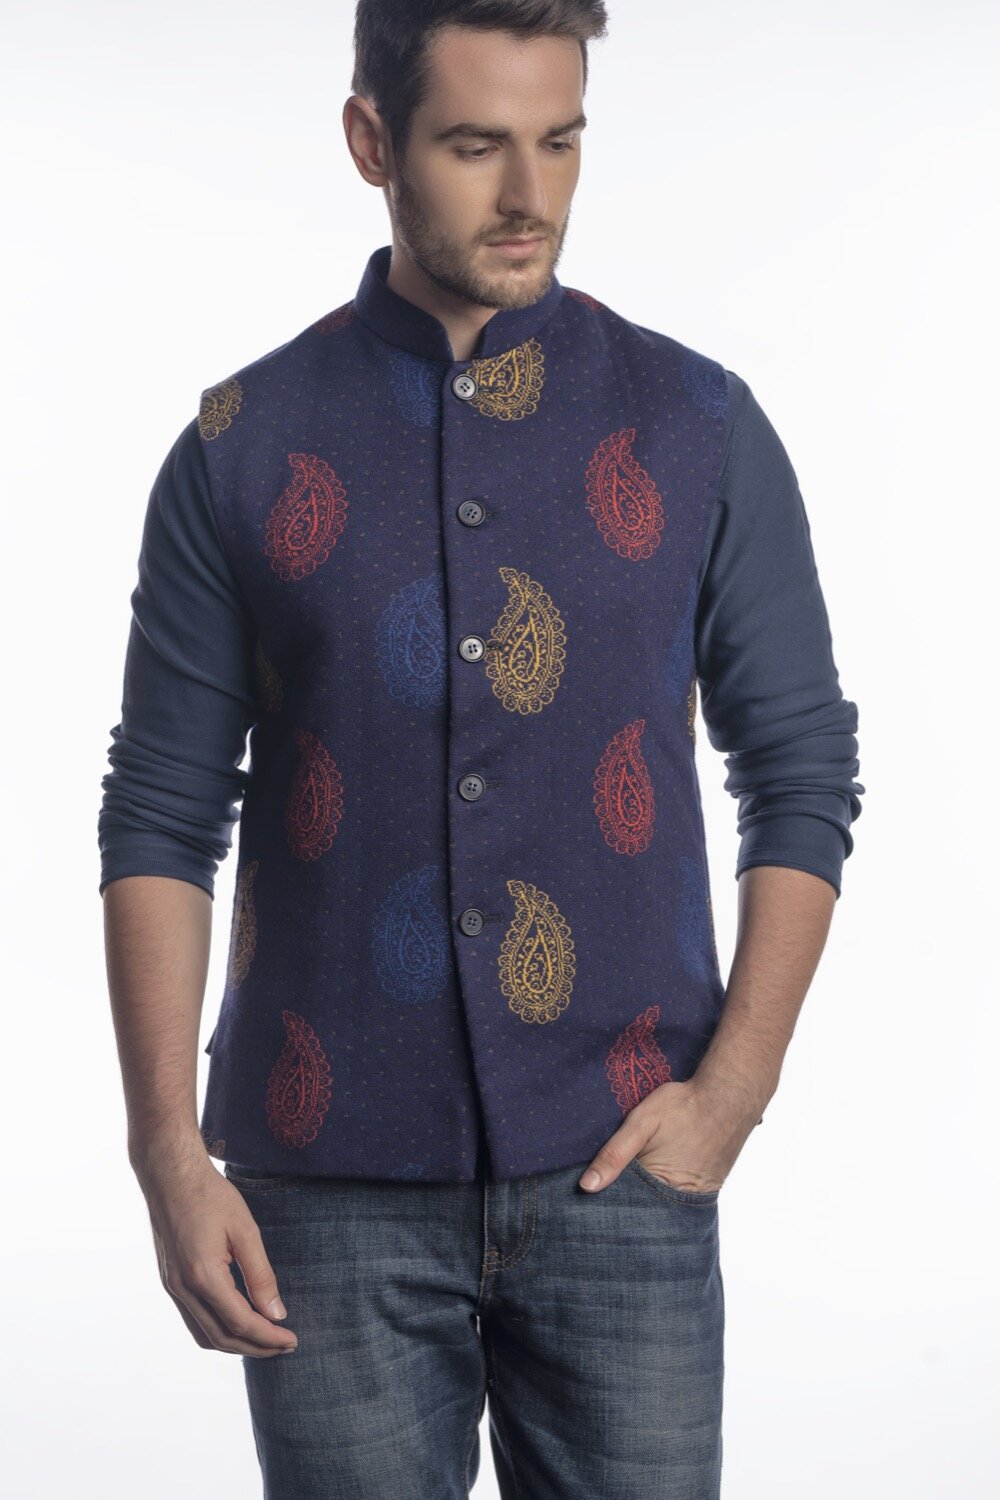 Men's Wear — Linear Design - Knitwear Manufacturer, Sweater ...